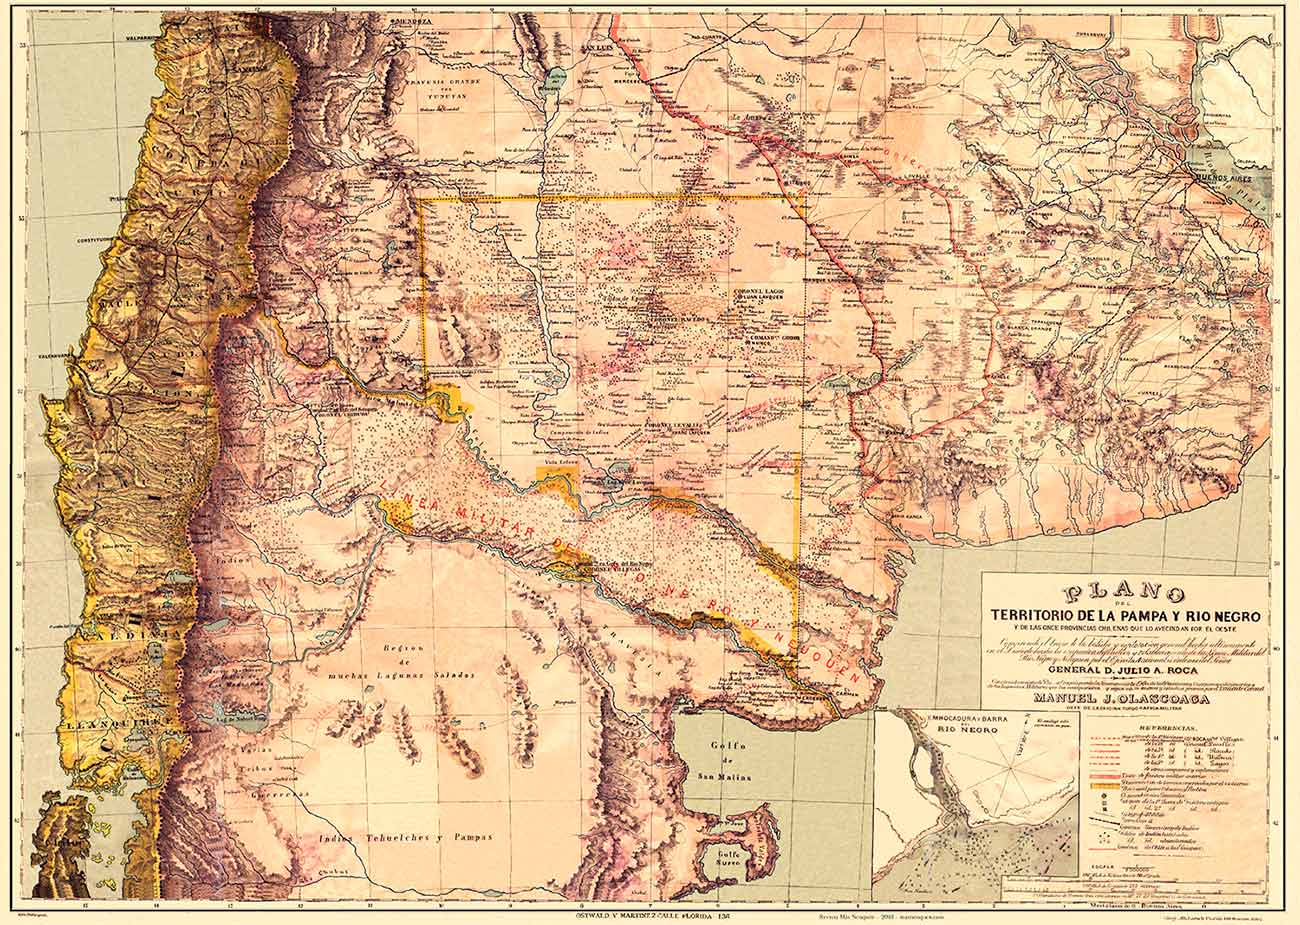 Mapa del territorio de la Pampa y Río Negro, de Olascoaga (1880)